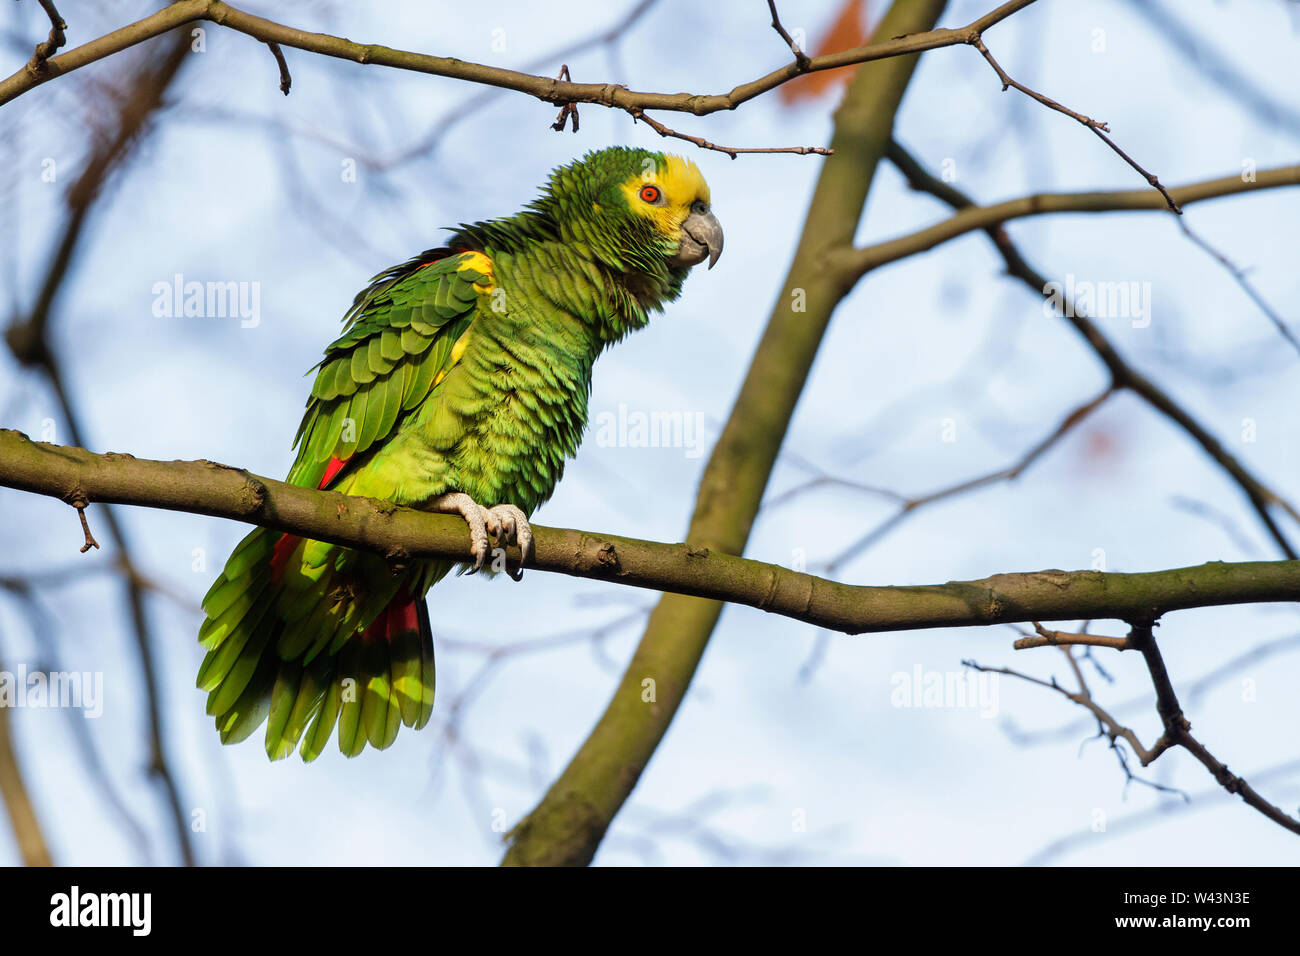 yellow-crowned amazon, yellow-crowned parrot, Gelbkopfamazone (Amazona oratrix) Stock Photo